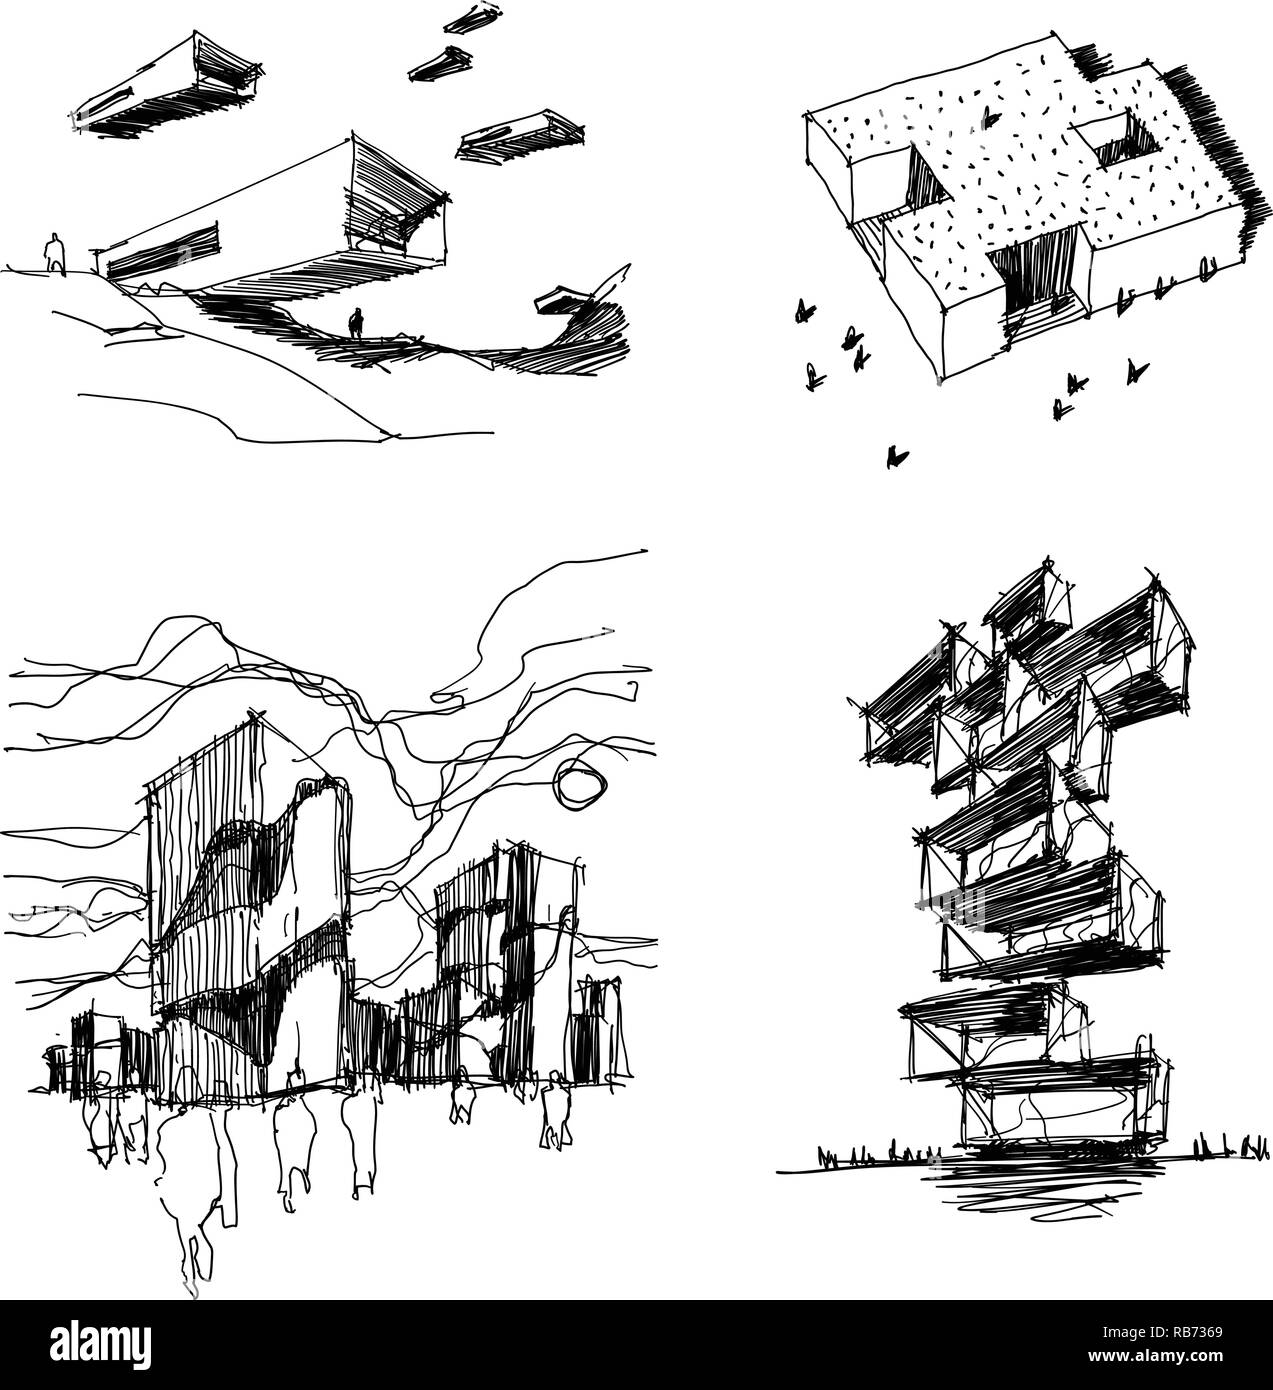 Vier Hand gezeichnet architectectural Skizzen der modernen abstrakten Architektur mit Menschen um Stock Vektor